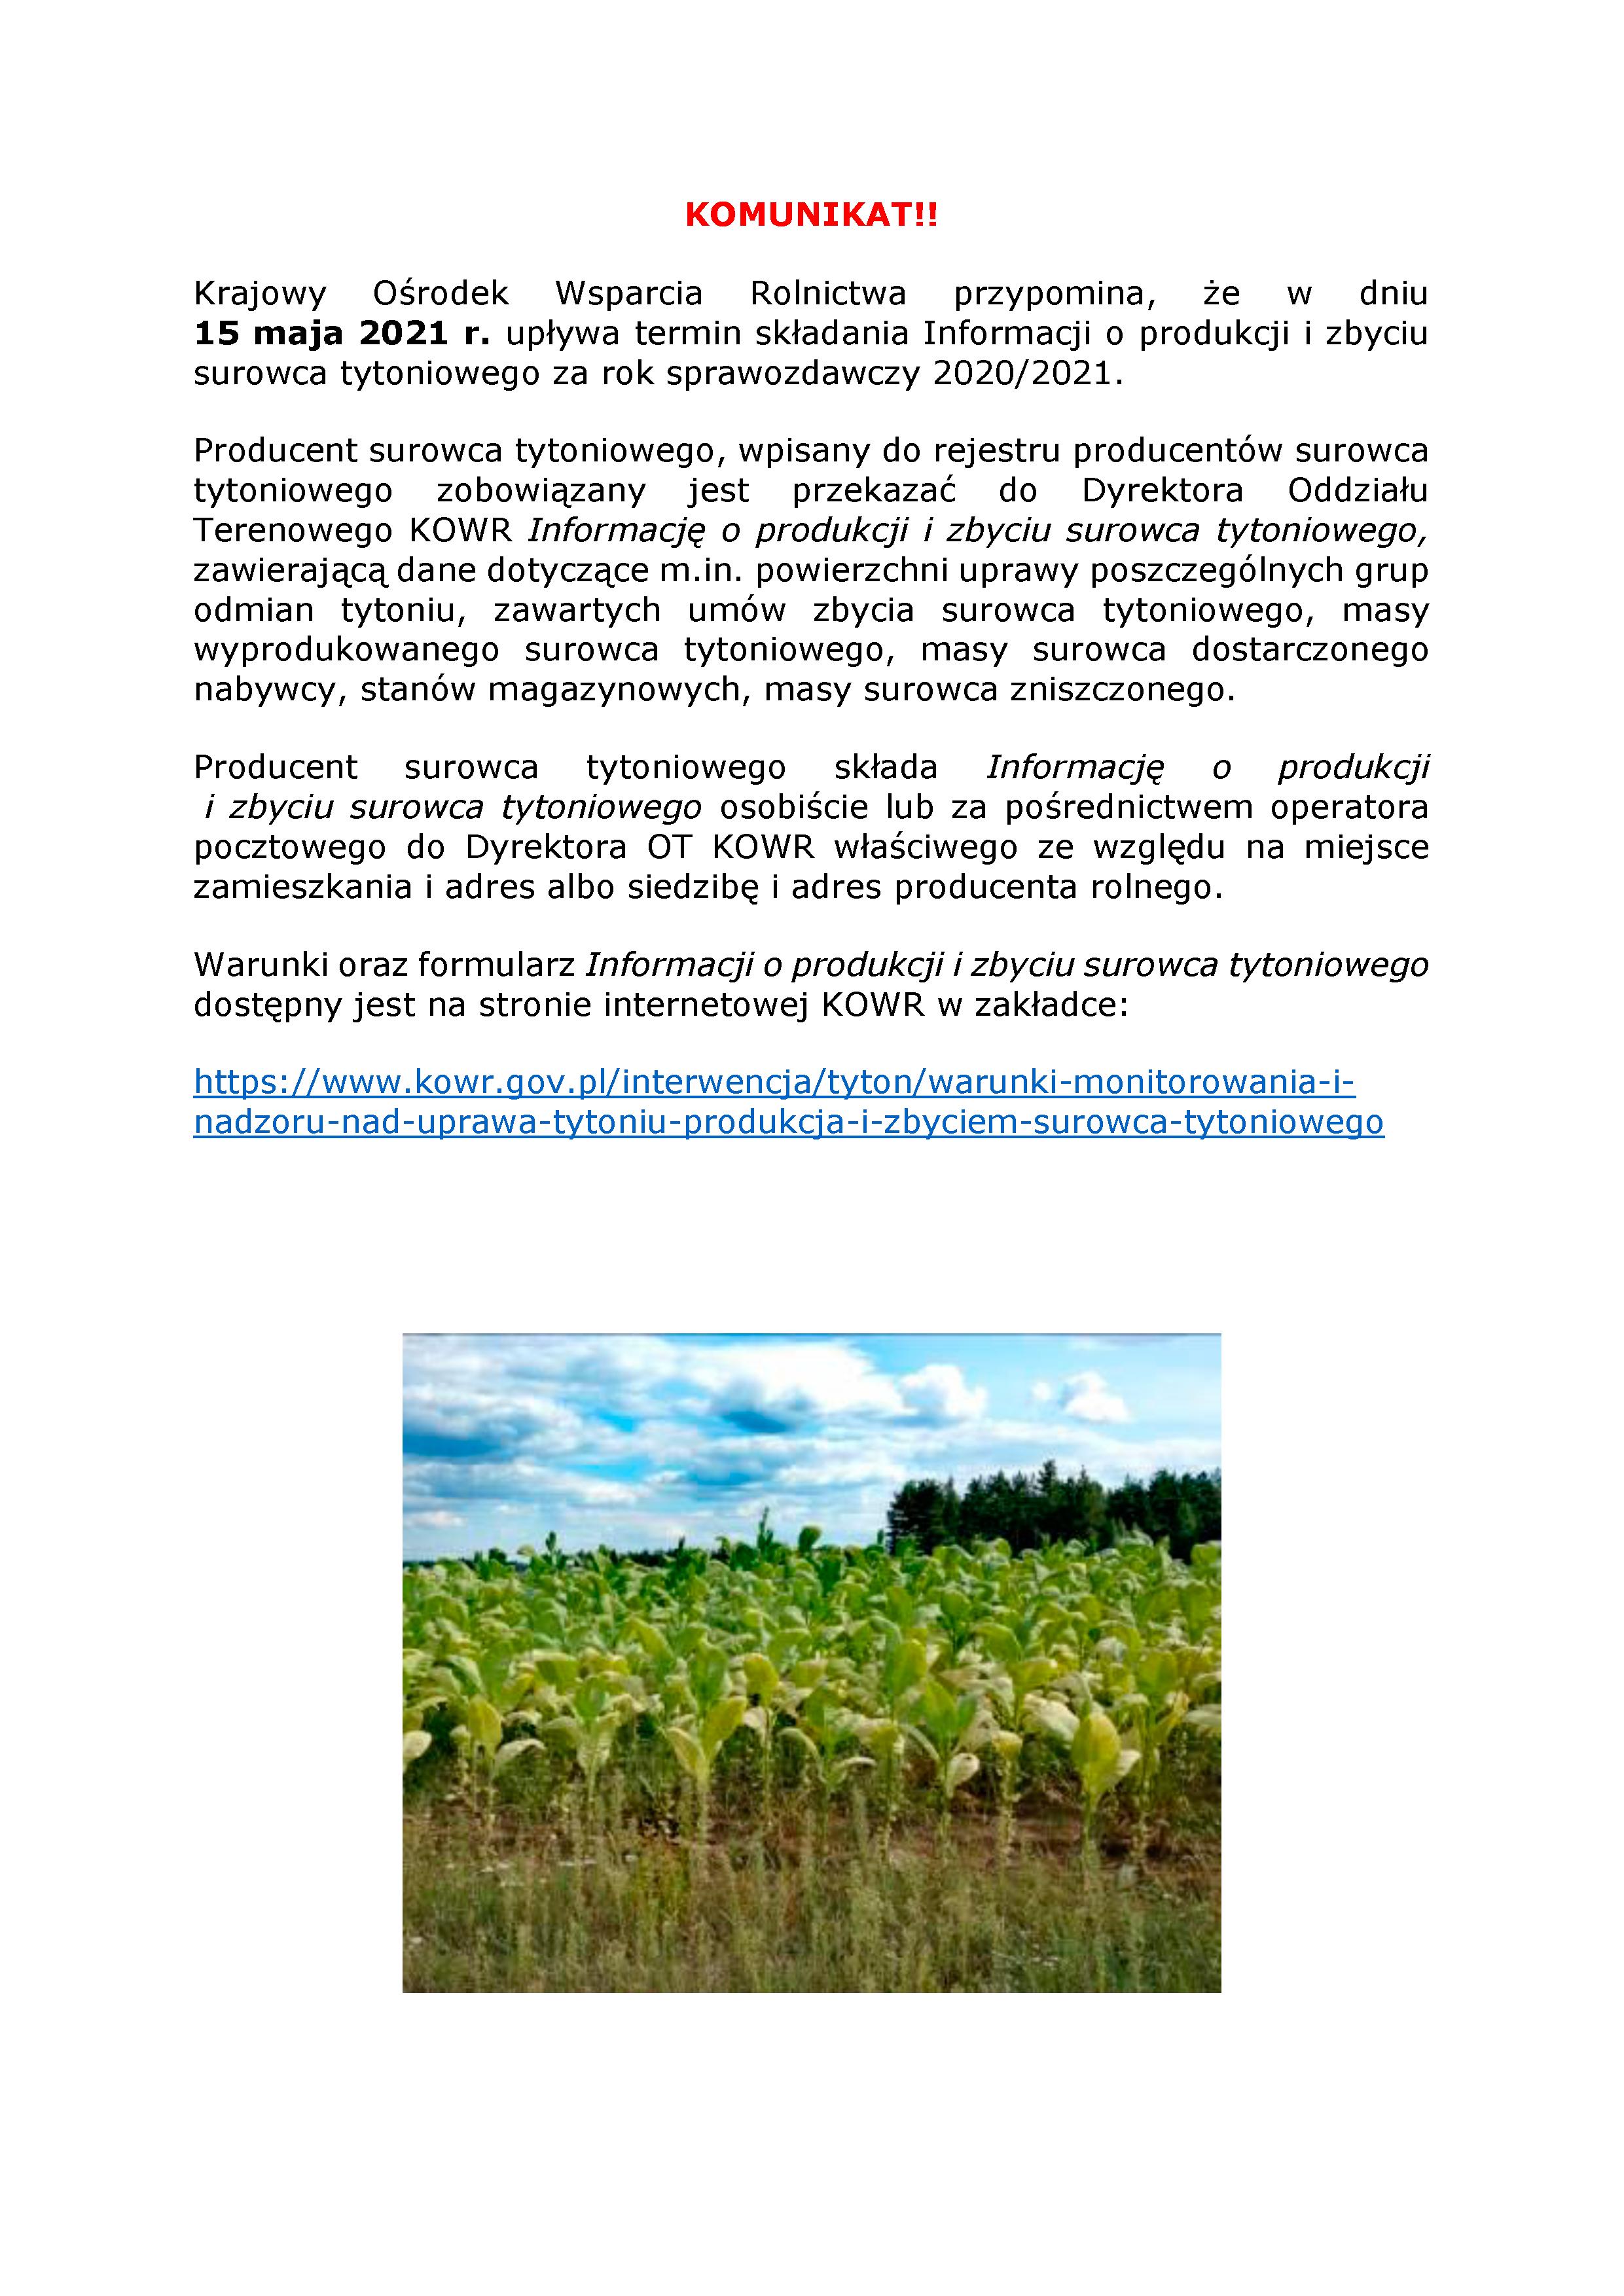 Krajowy Ośrodek Wsparcia Rolnictwa przypomina, że w dniu  15 maja 2021 r. upływa termin składania Informacji o produkcji i zbyciu surowca tytoniowego za rok sprawozdawczy 2020/2021. - zdjęcie